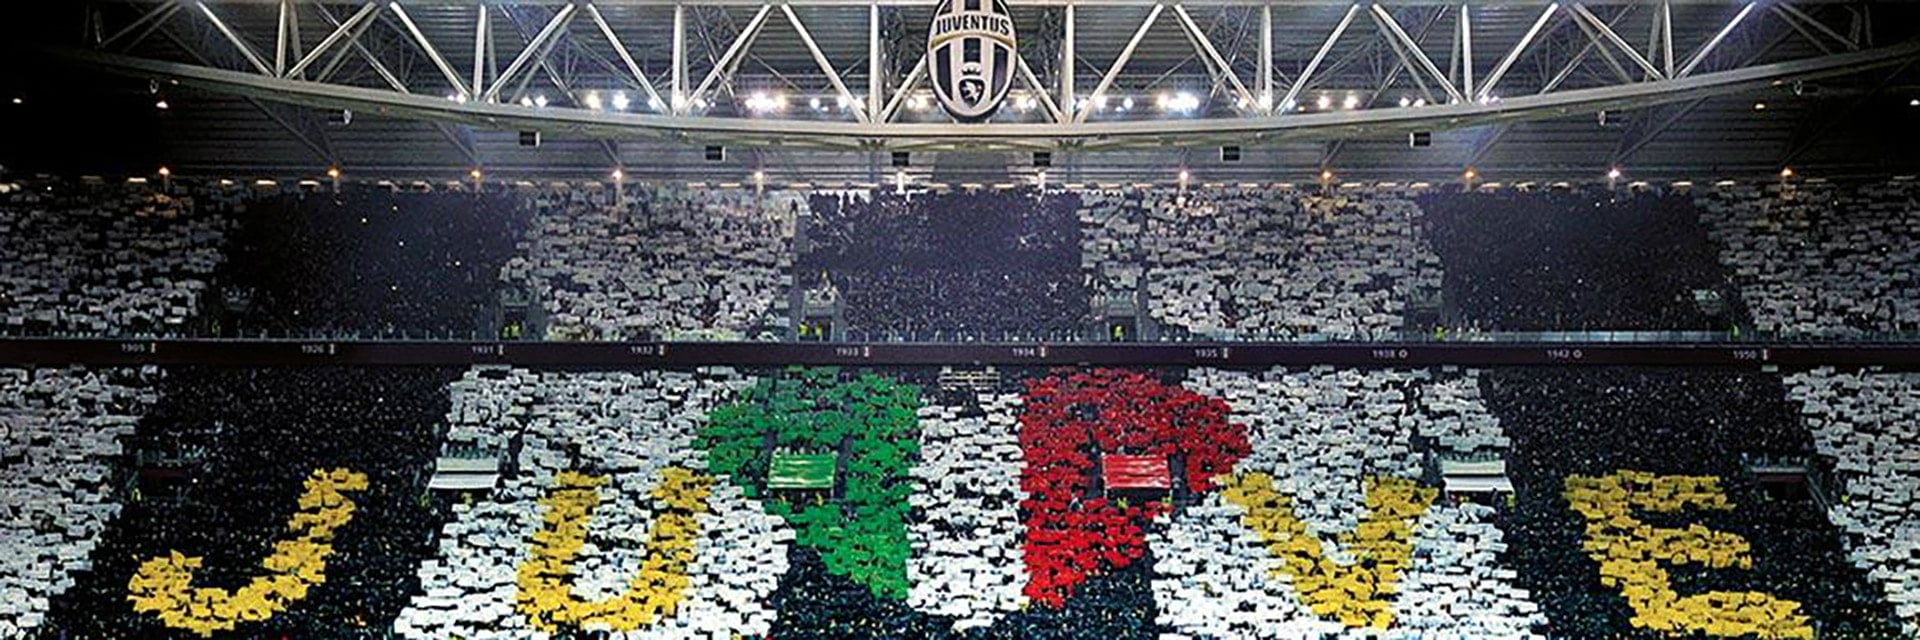 Juventus FC - AC Milan, 1 Aprilat 0:00